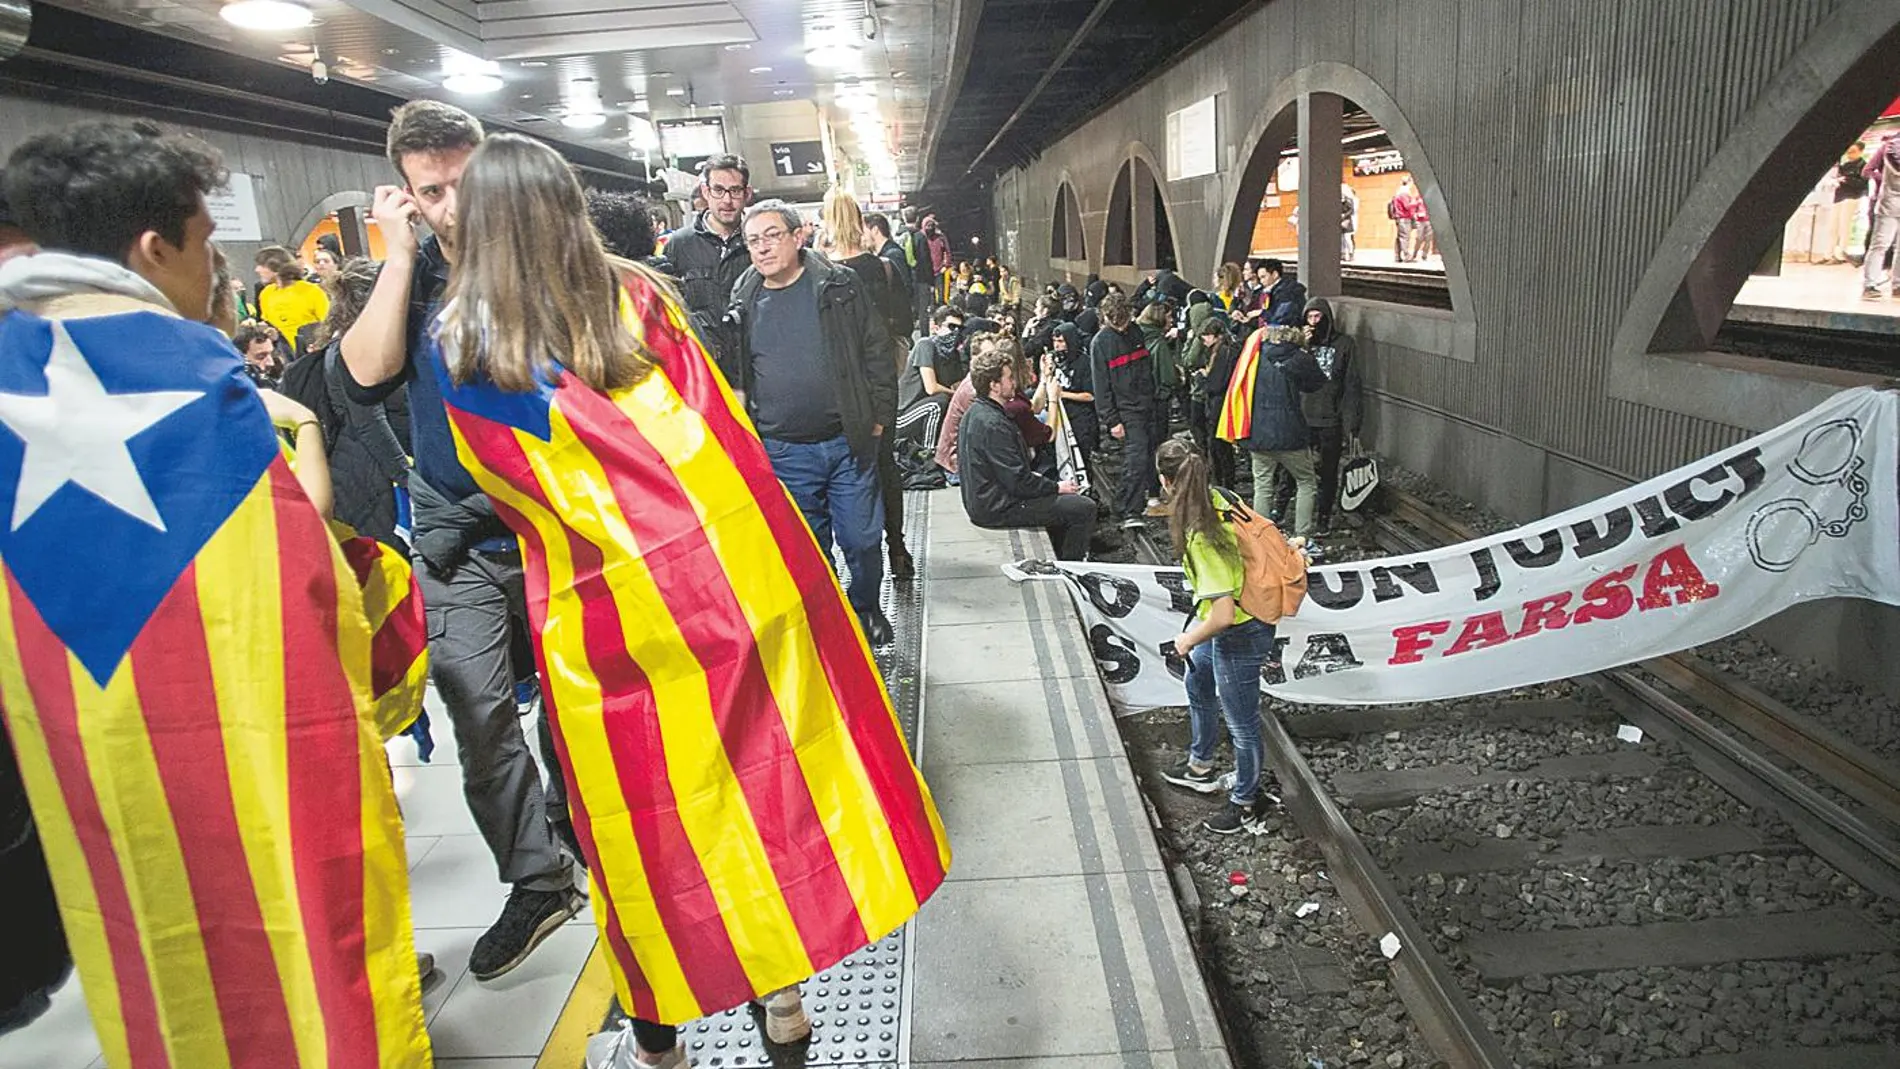 Los CDR ocuparon cuatro vías en la estación de Renfe de Plaza Cataluña, lo que provocó retrasos